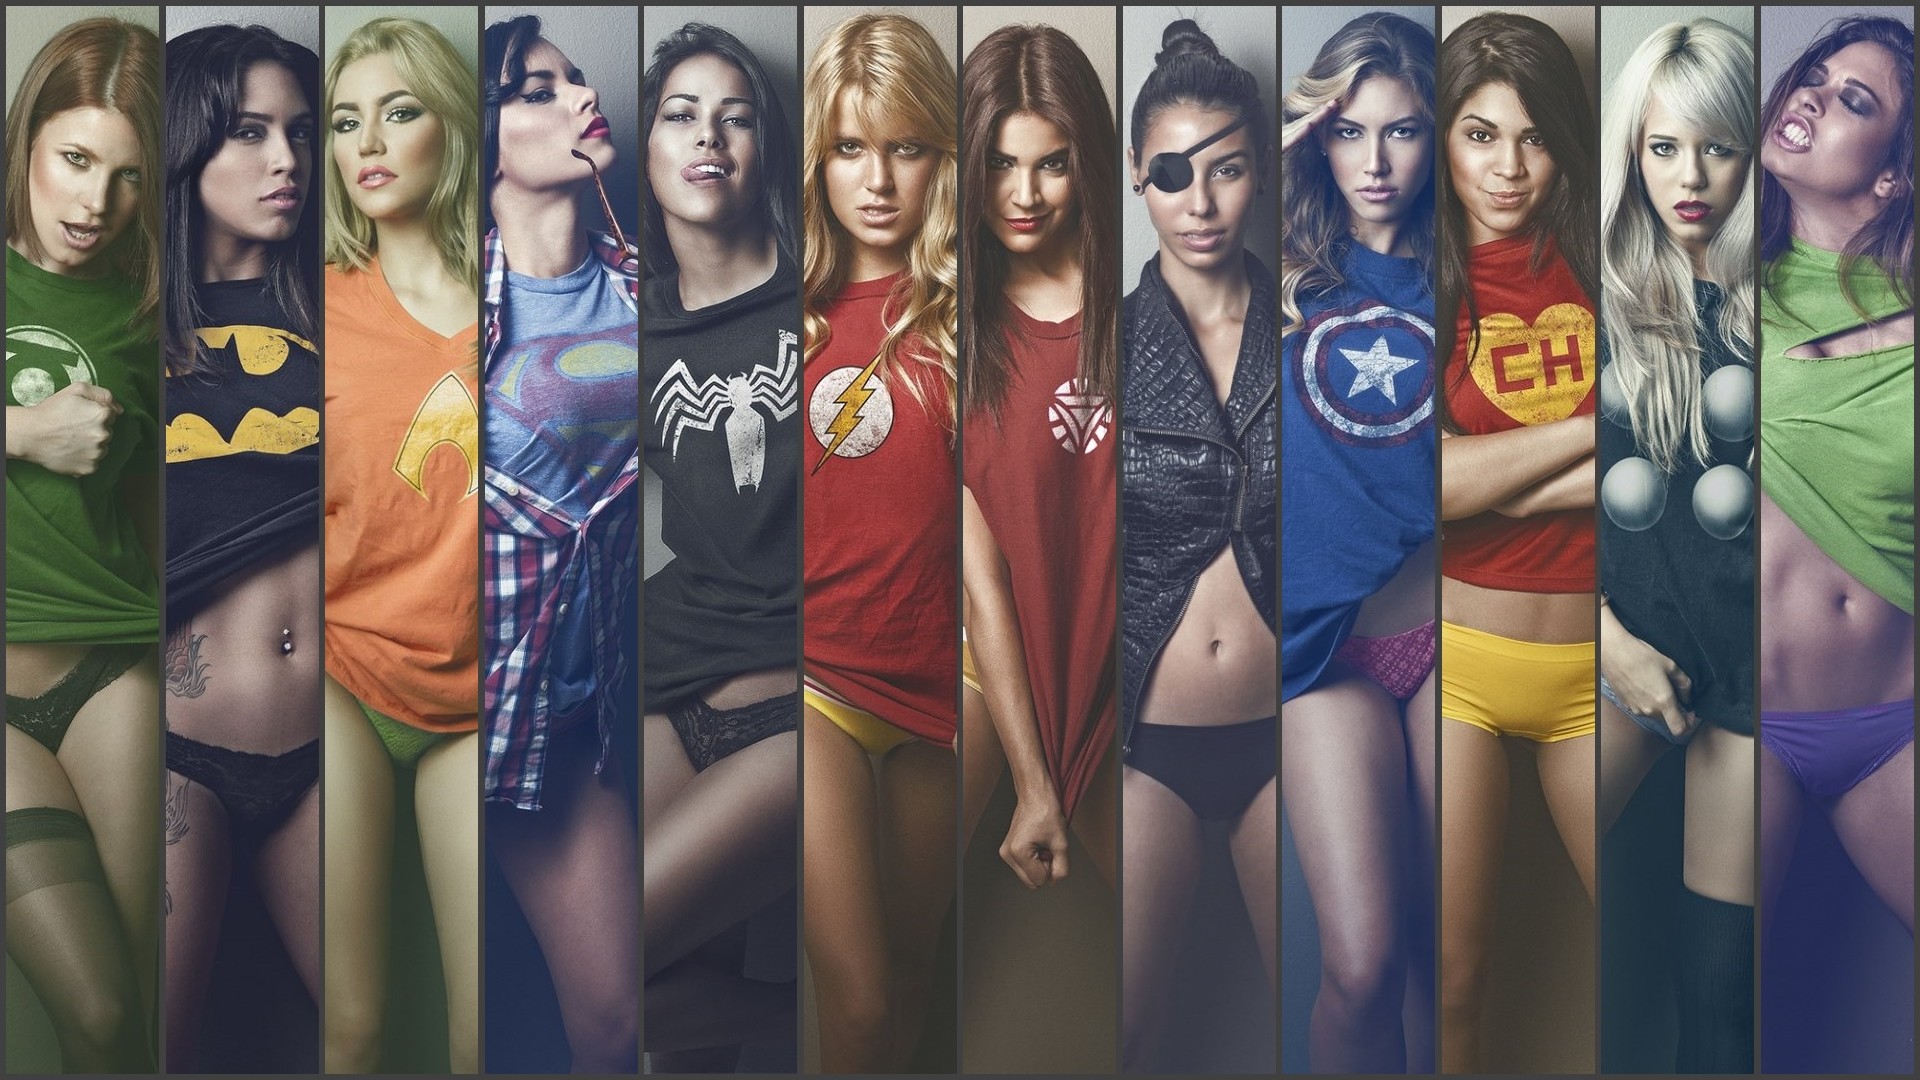 Ian Reyes Heroines - HD Wallpaper 